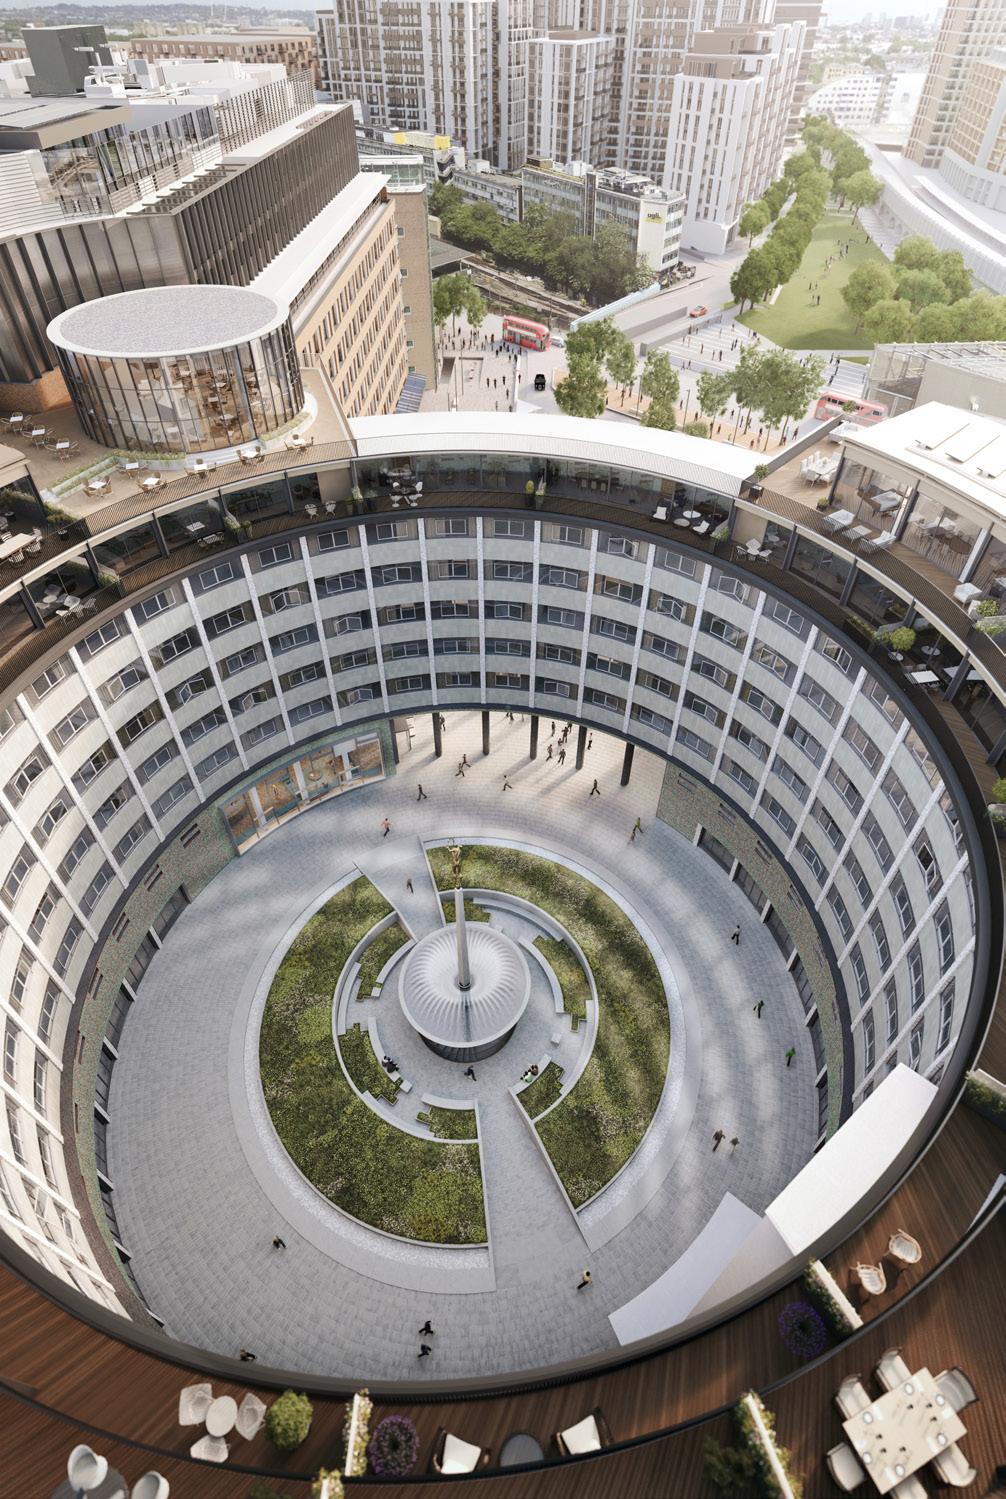 Yeni Crescent Binası Helios un etrafını sarar; daireler, özel bahçeleri, huzurlu Hammersmith Park ı ya da iki taraflı dairelerdense ikisini birden gören manzaralara sahip geniş pencerelere ve camlı